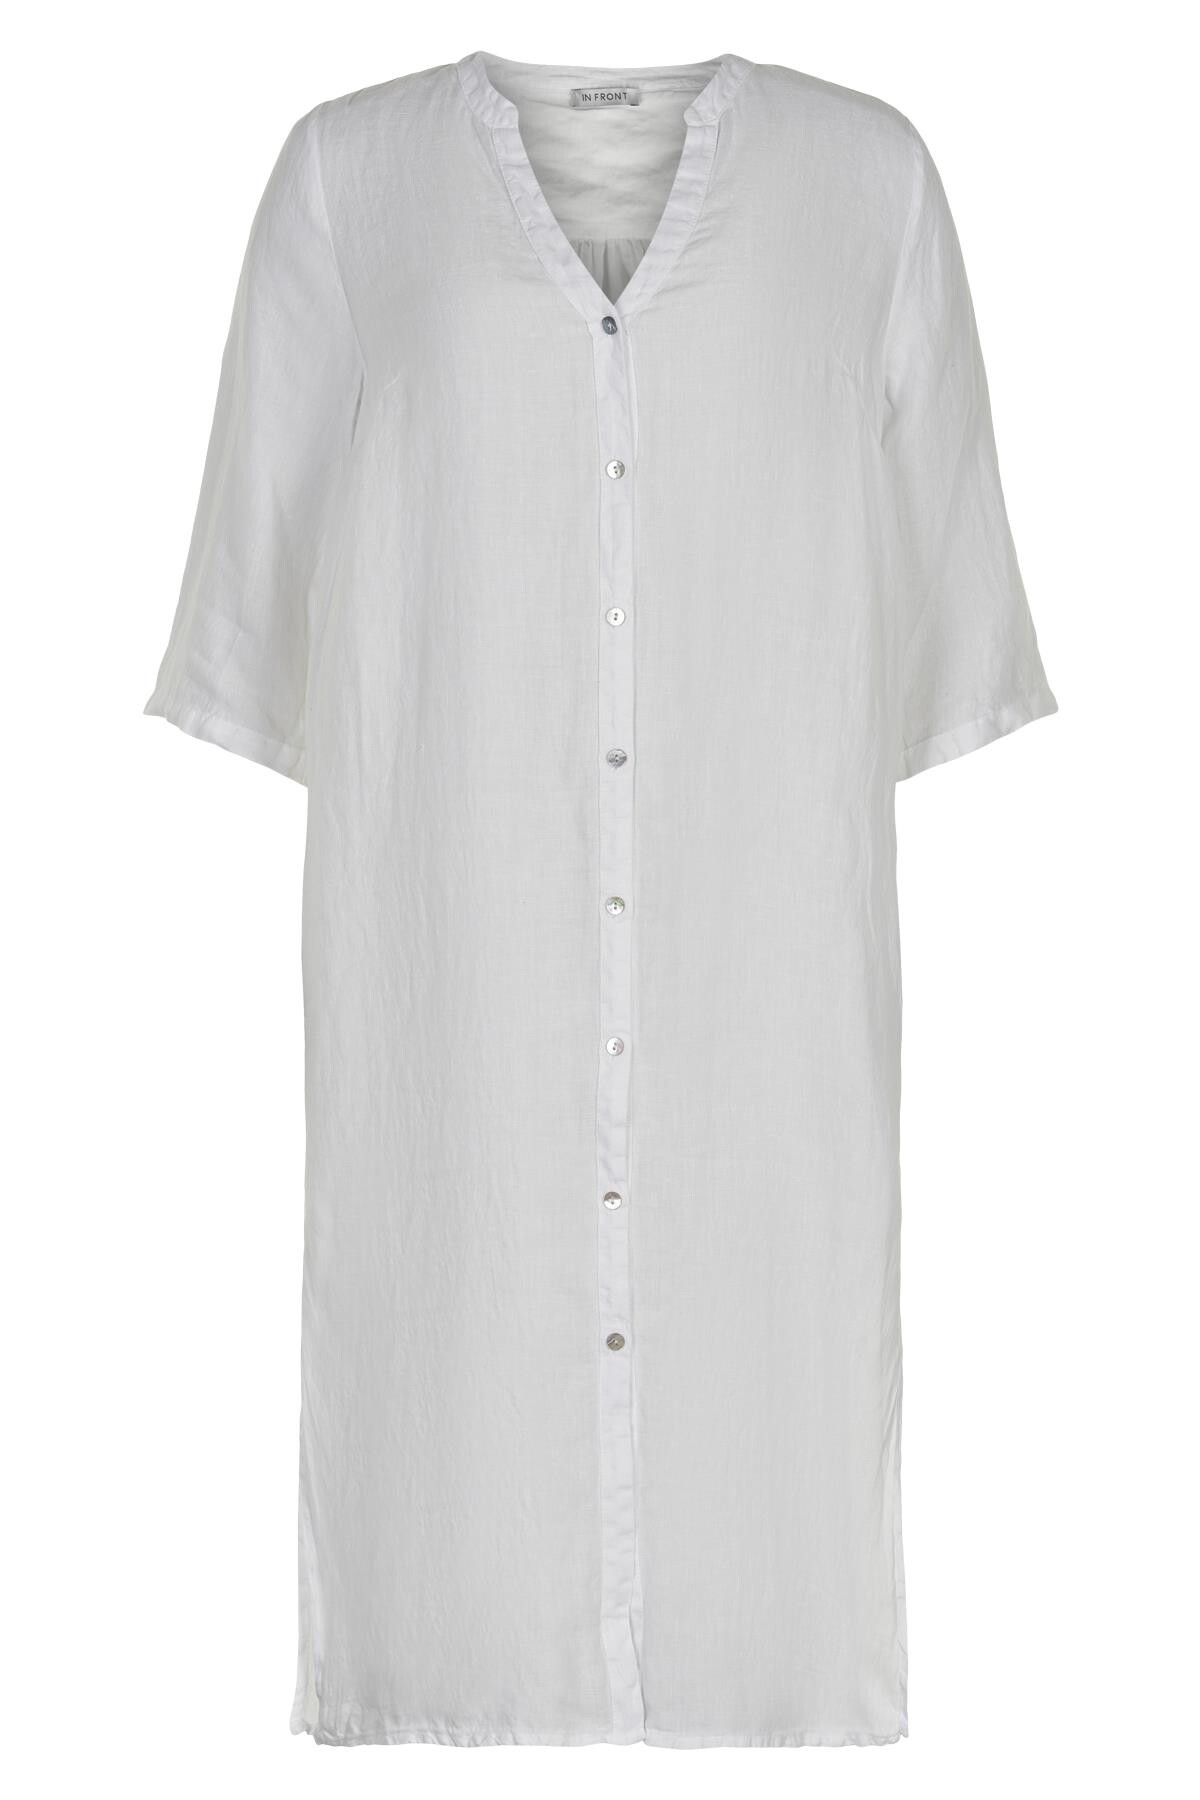 Se IN FRONT Lino Lang Skjortekjole, Farve: White, Størrelse: M, Dame hos Infront Women